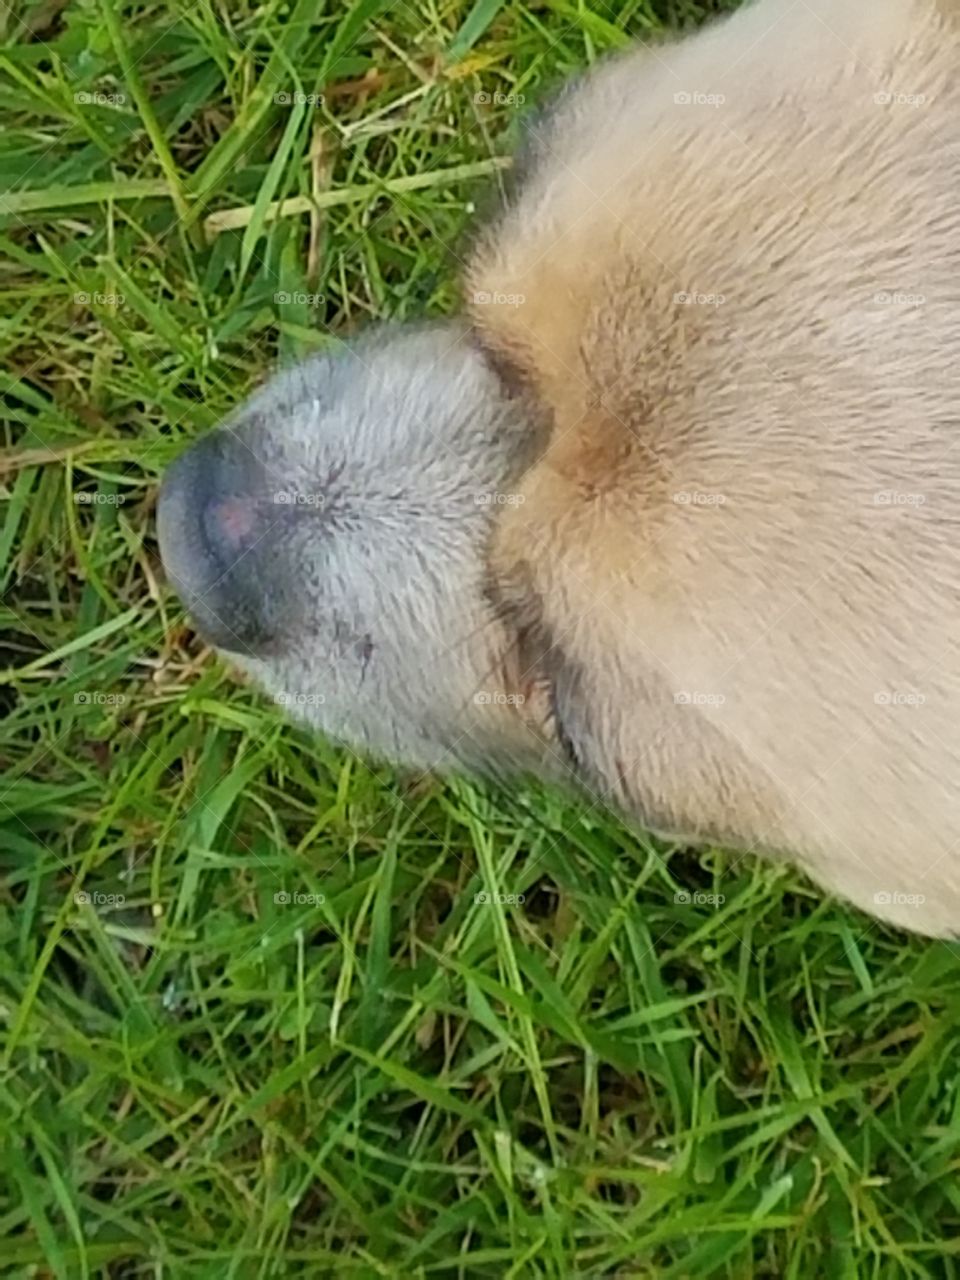 Dog nose outside